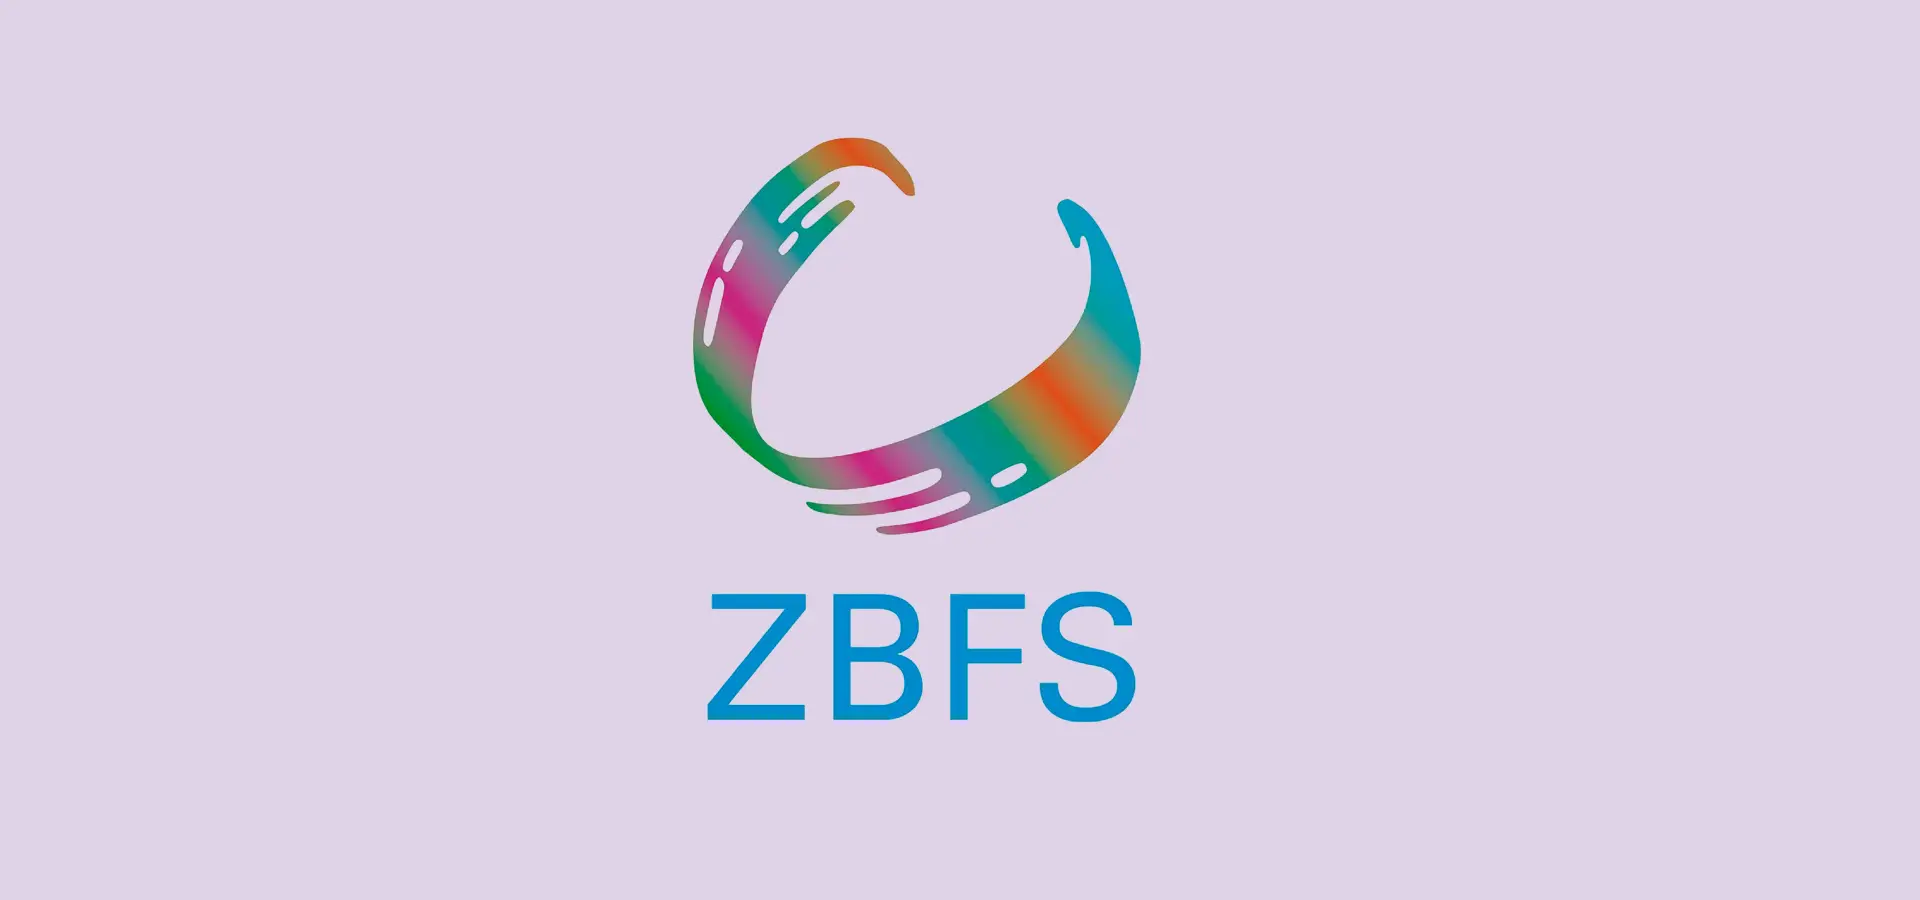 Farbenfrohes Logo mit der Aufschrift "ZBFS" auf lila Hintergrund.